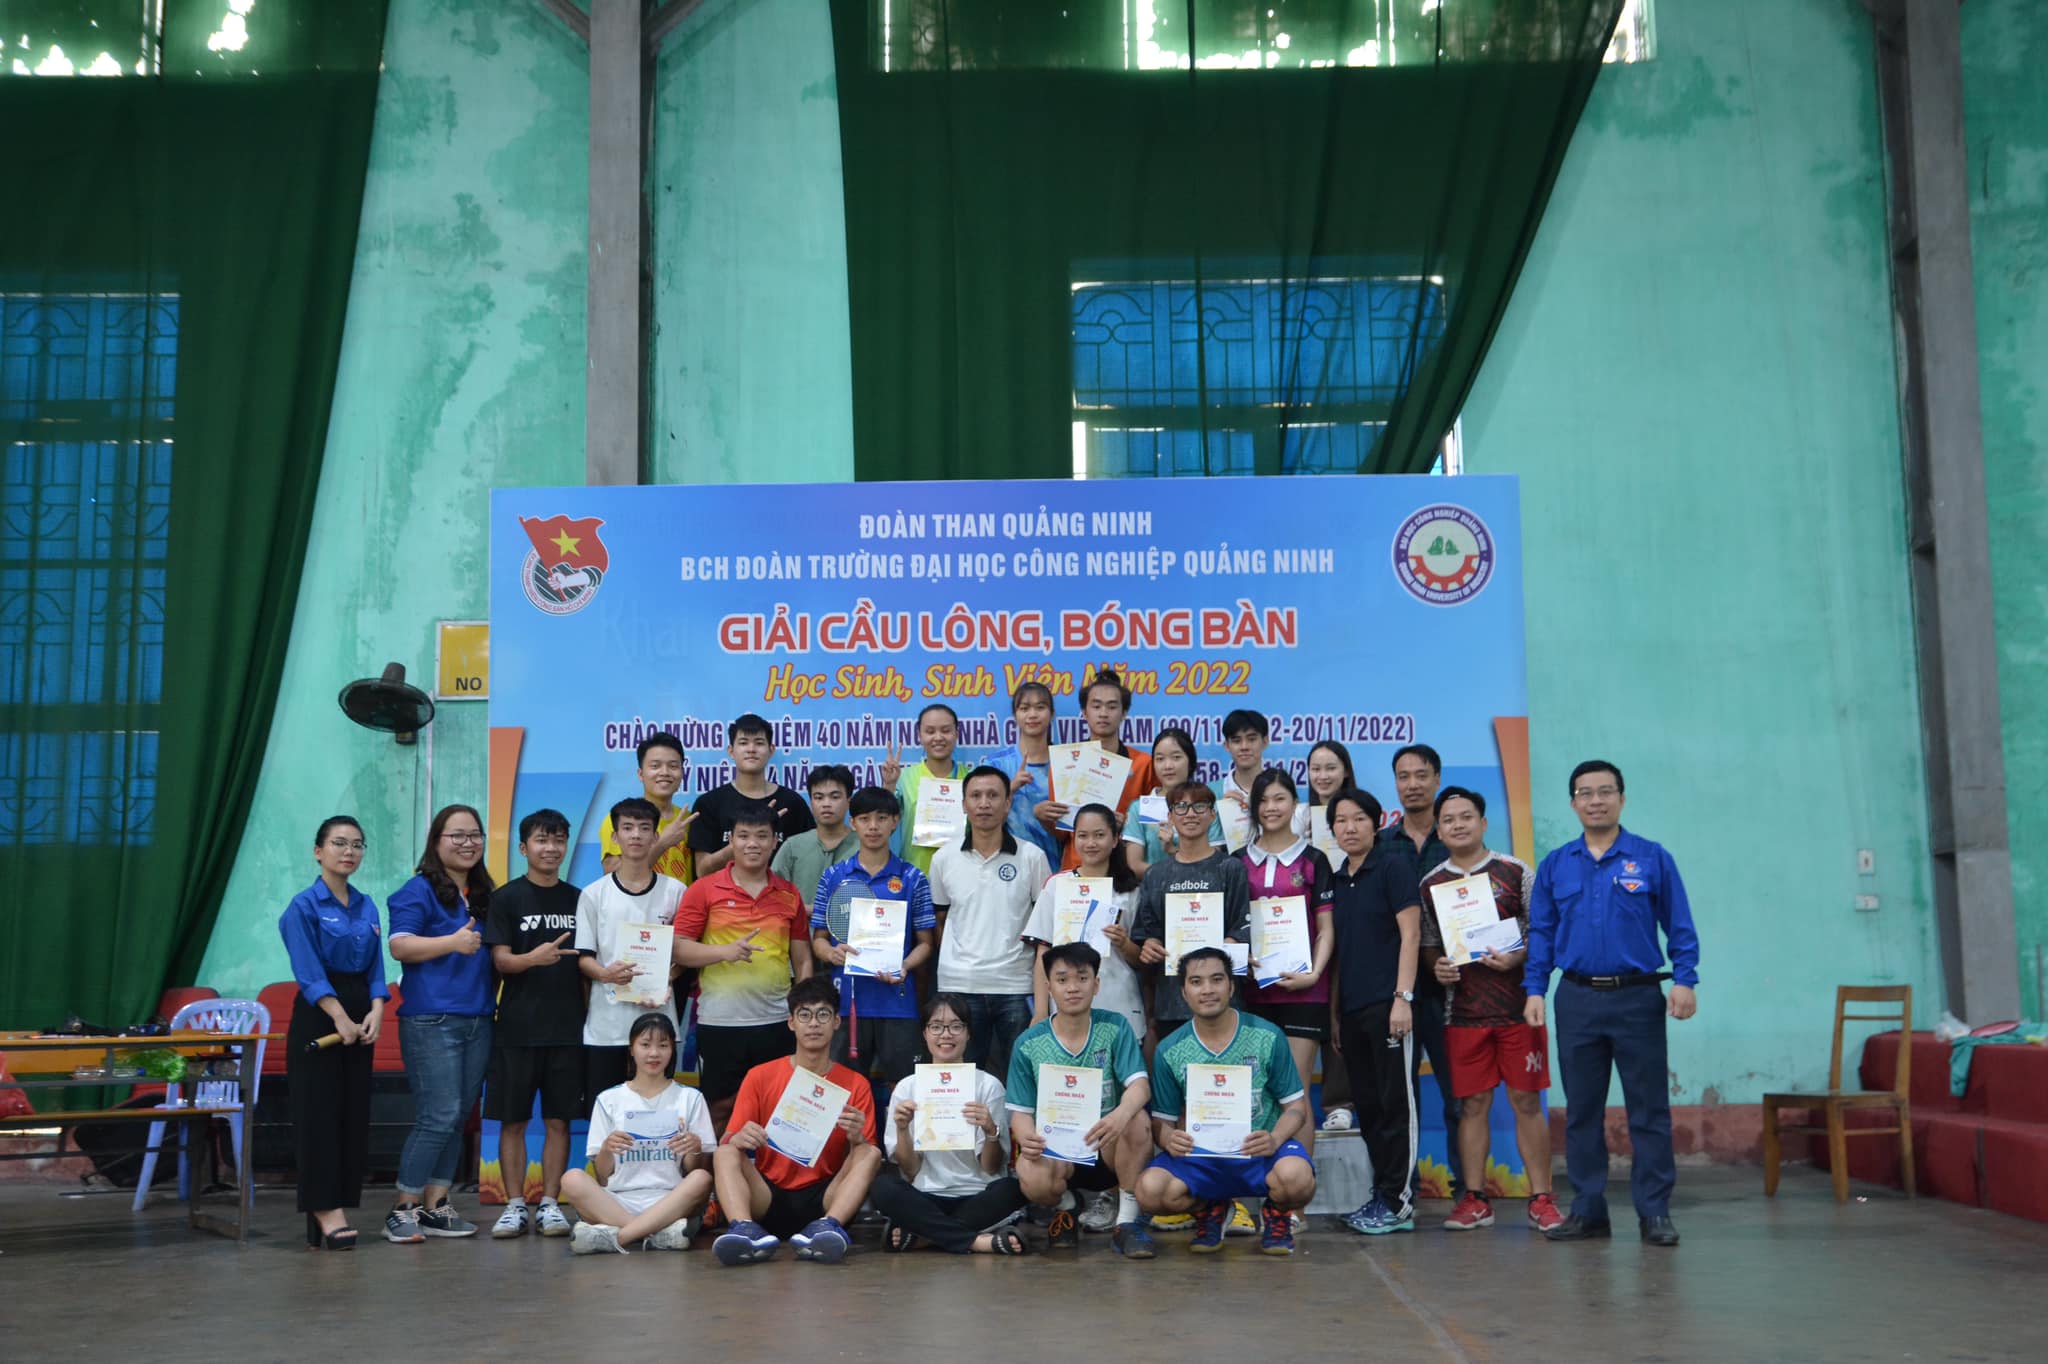 Đoàn Thanh niên trường ĐH Công nghiệp Quảng Ninh tổ chức thành công giải cầu lông, bóng bàn học sinh sinh viên năm 2022